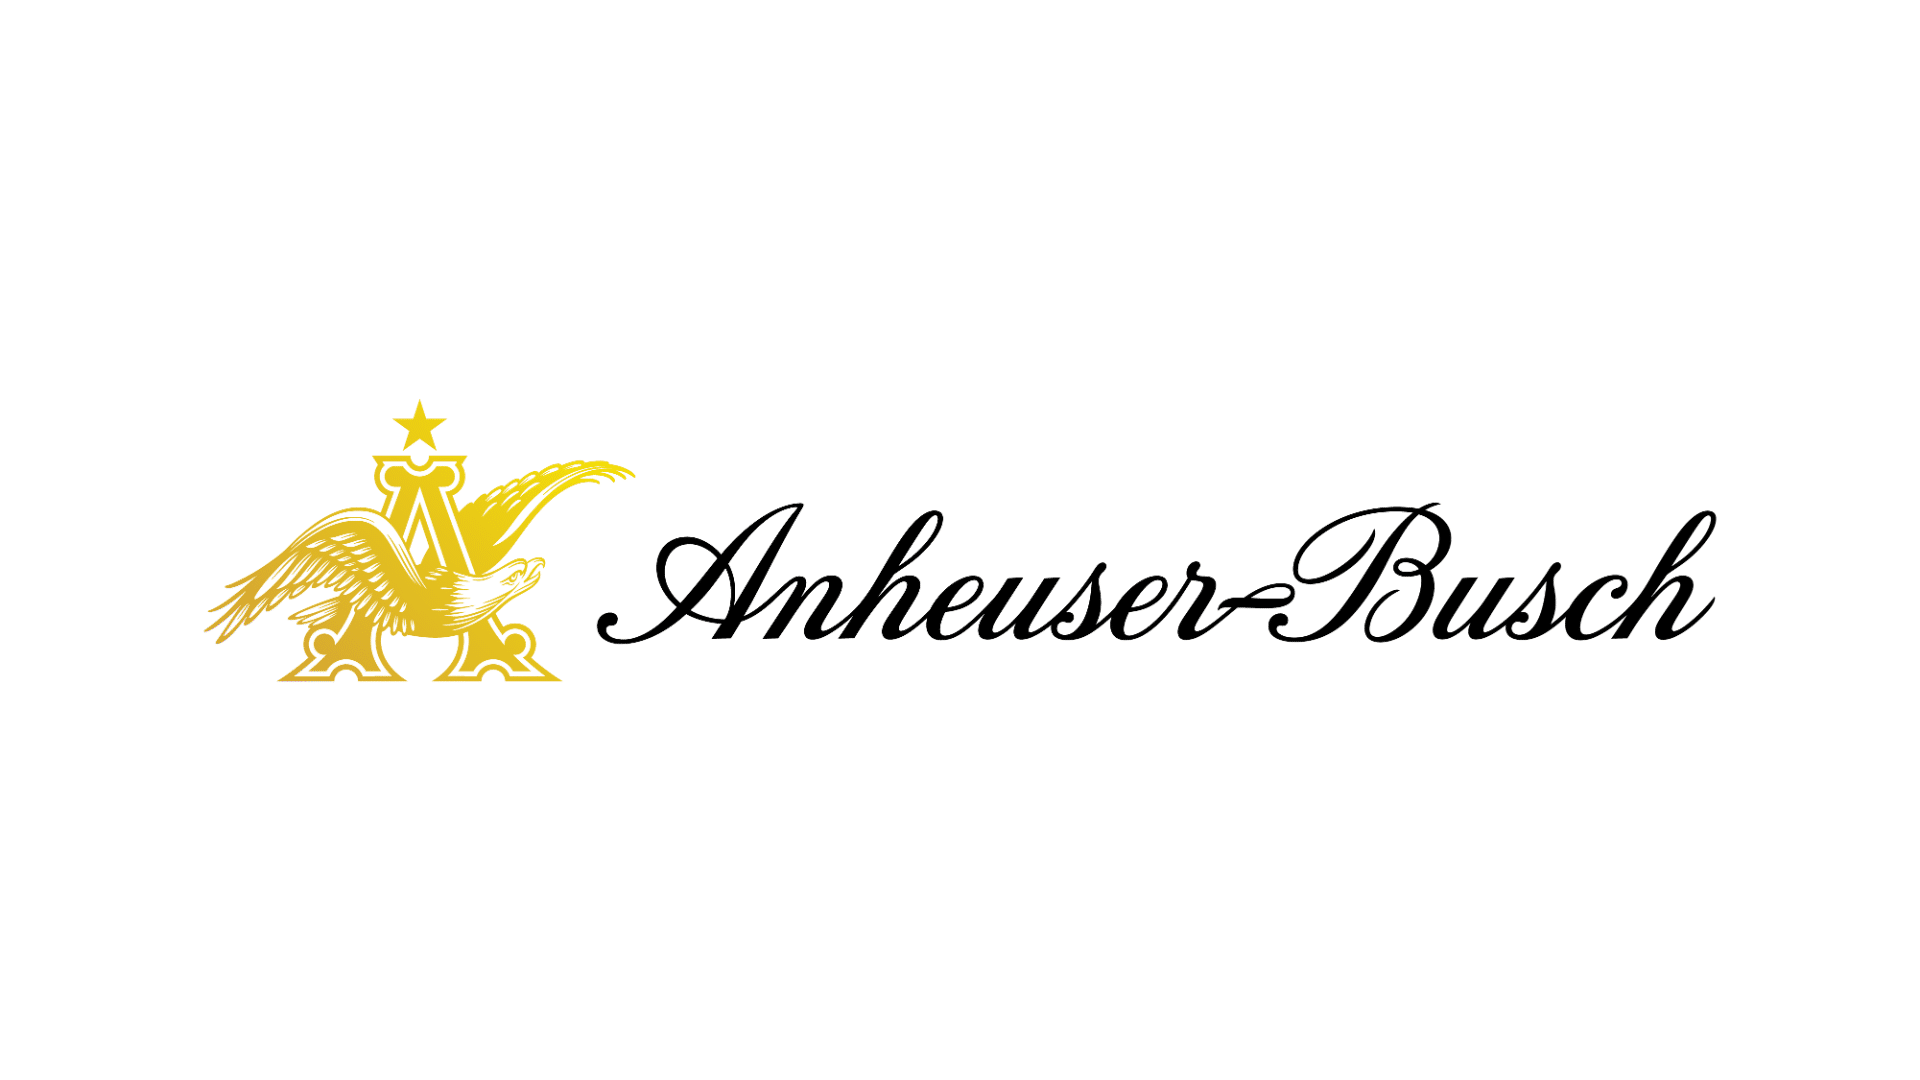 new anheuser busch logo